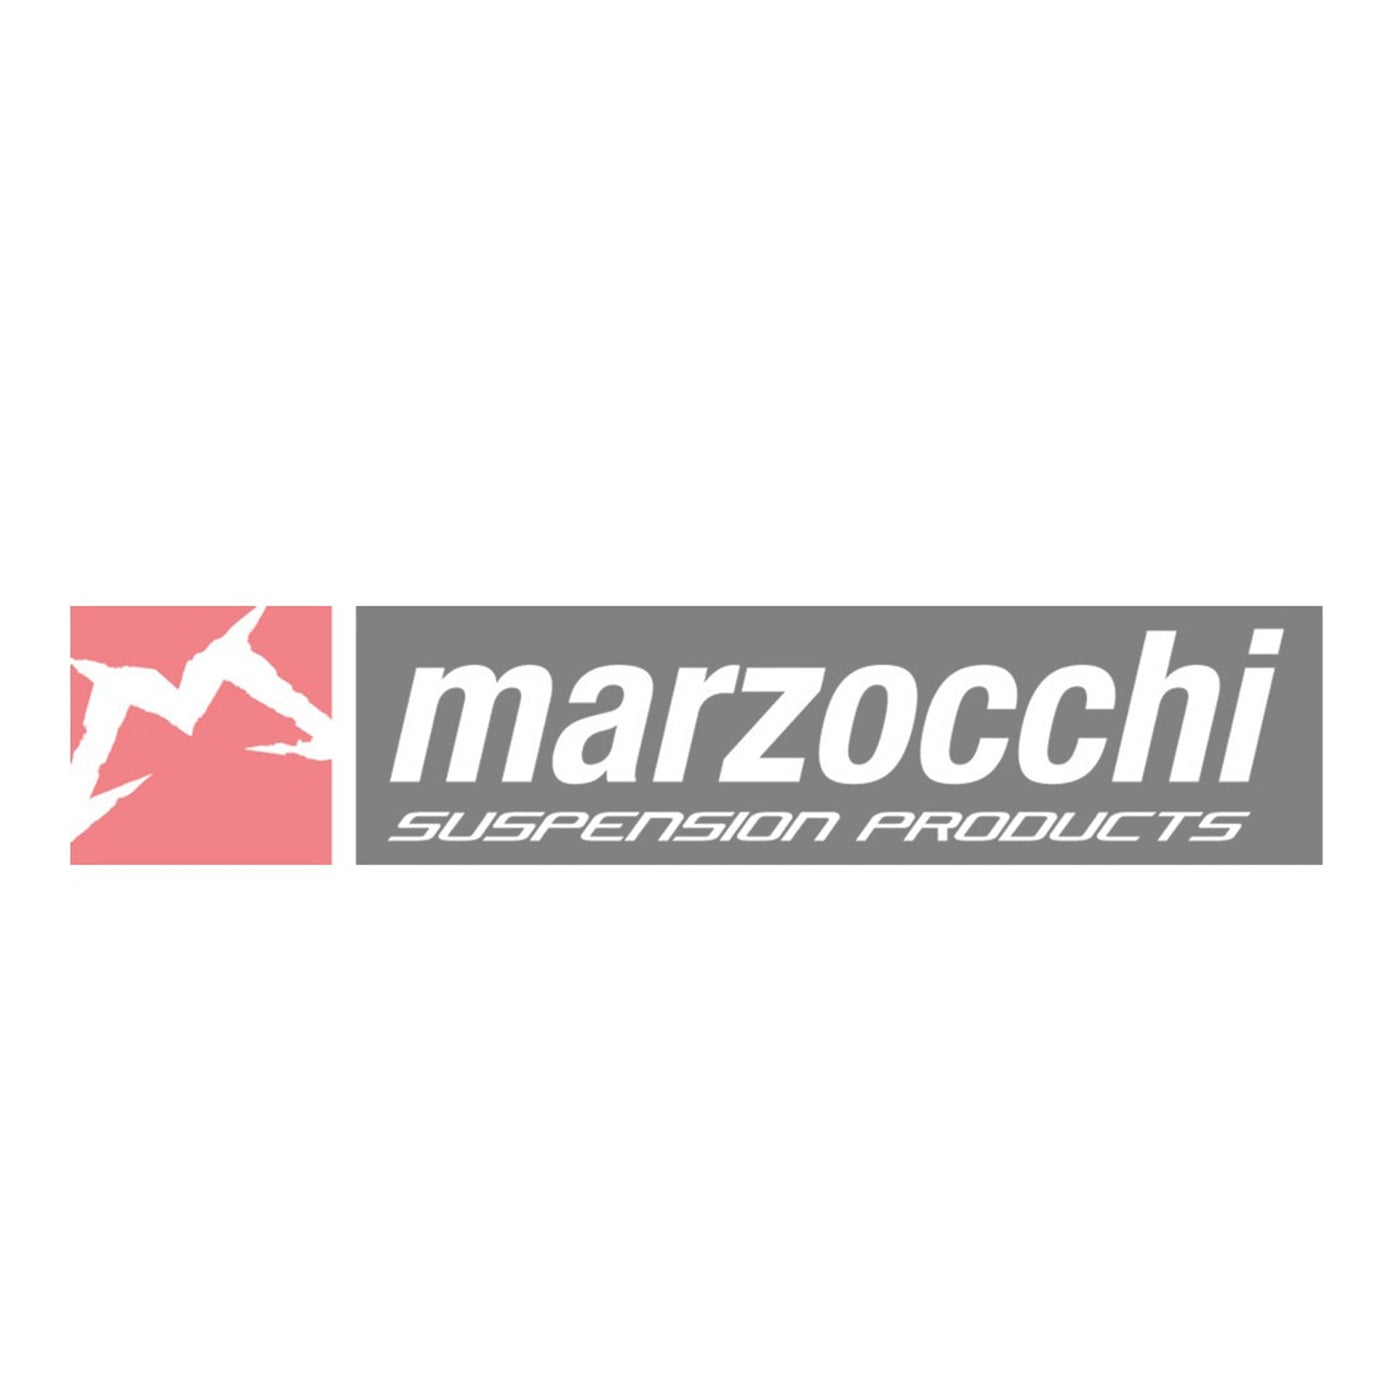 Marzocchi (2019+) Chercheur de cache-poussières